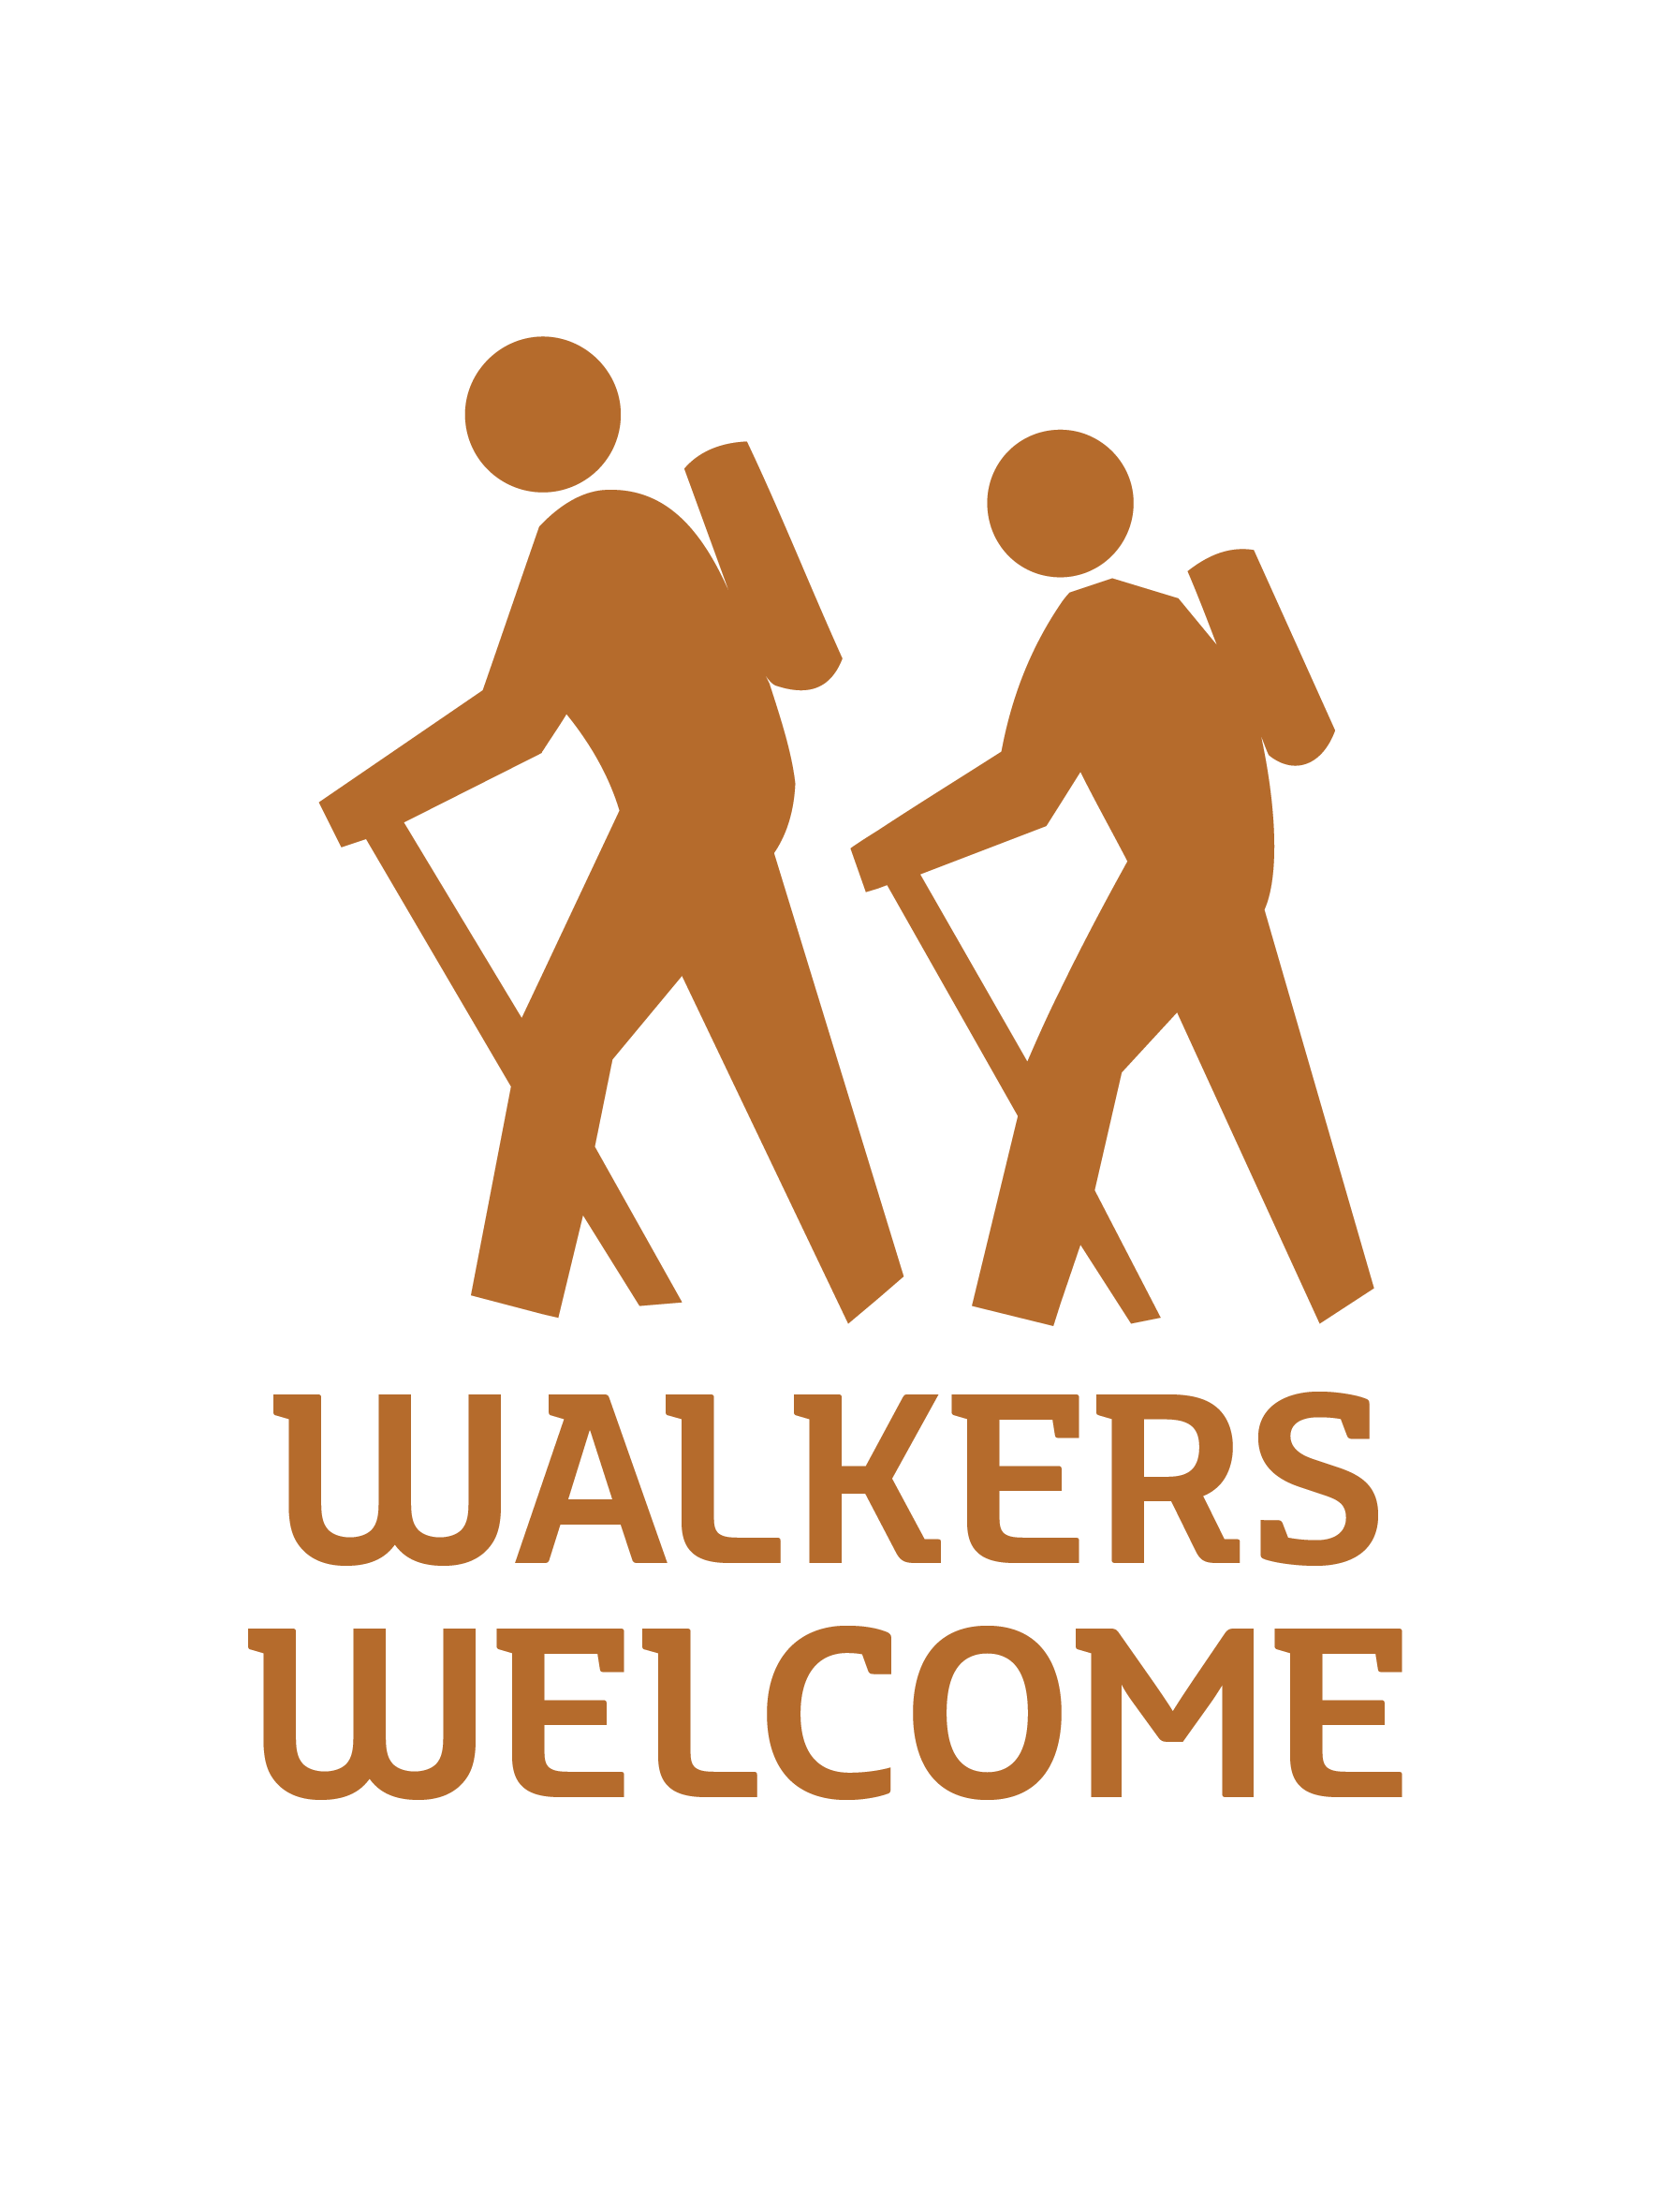 Walkers welcome.jpg